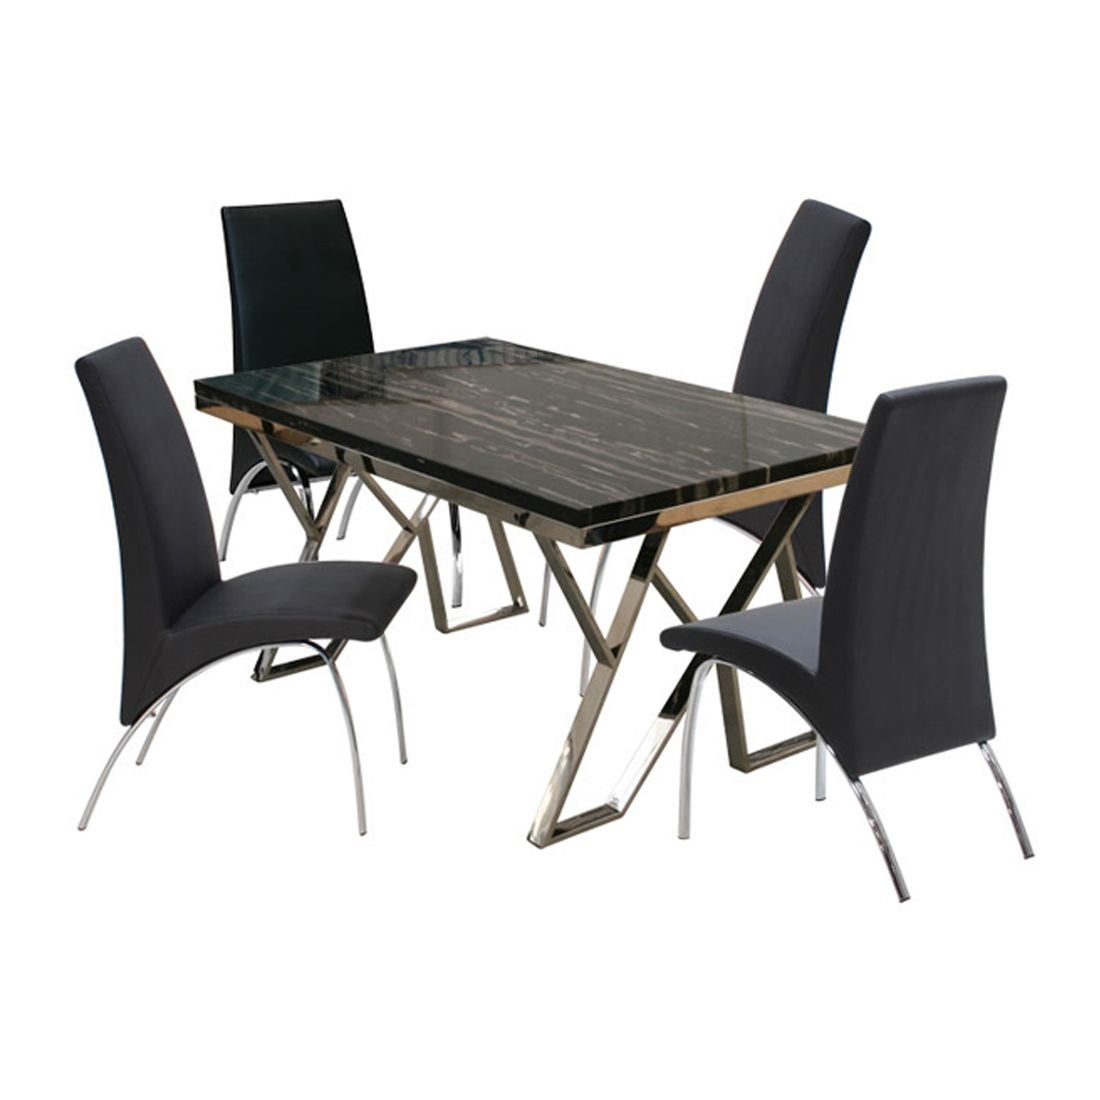 โต๊ะทานอาหาร โต๊ะอาหารขาเหล็กท๊อปหิน รุ่น Apollo-SB Design Square